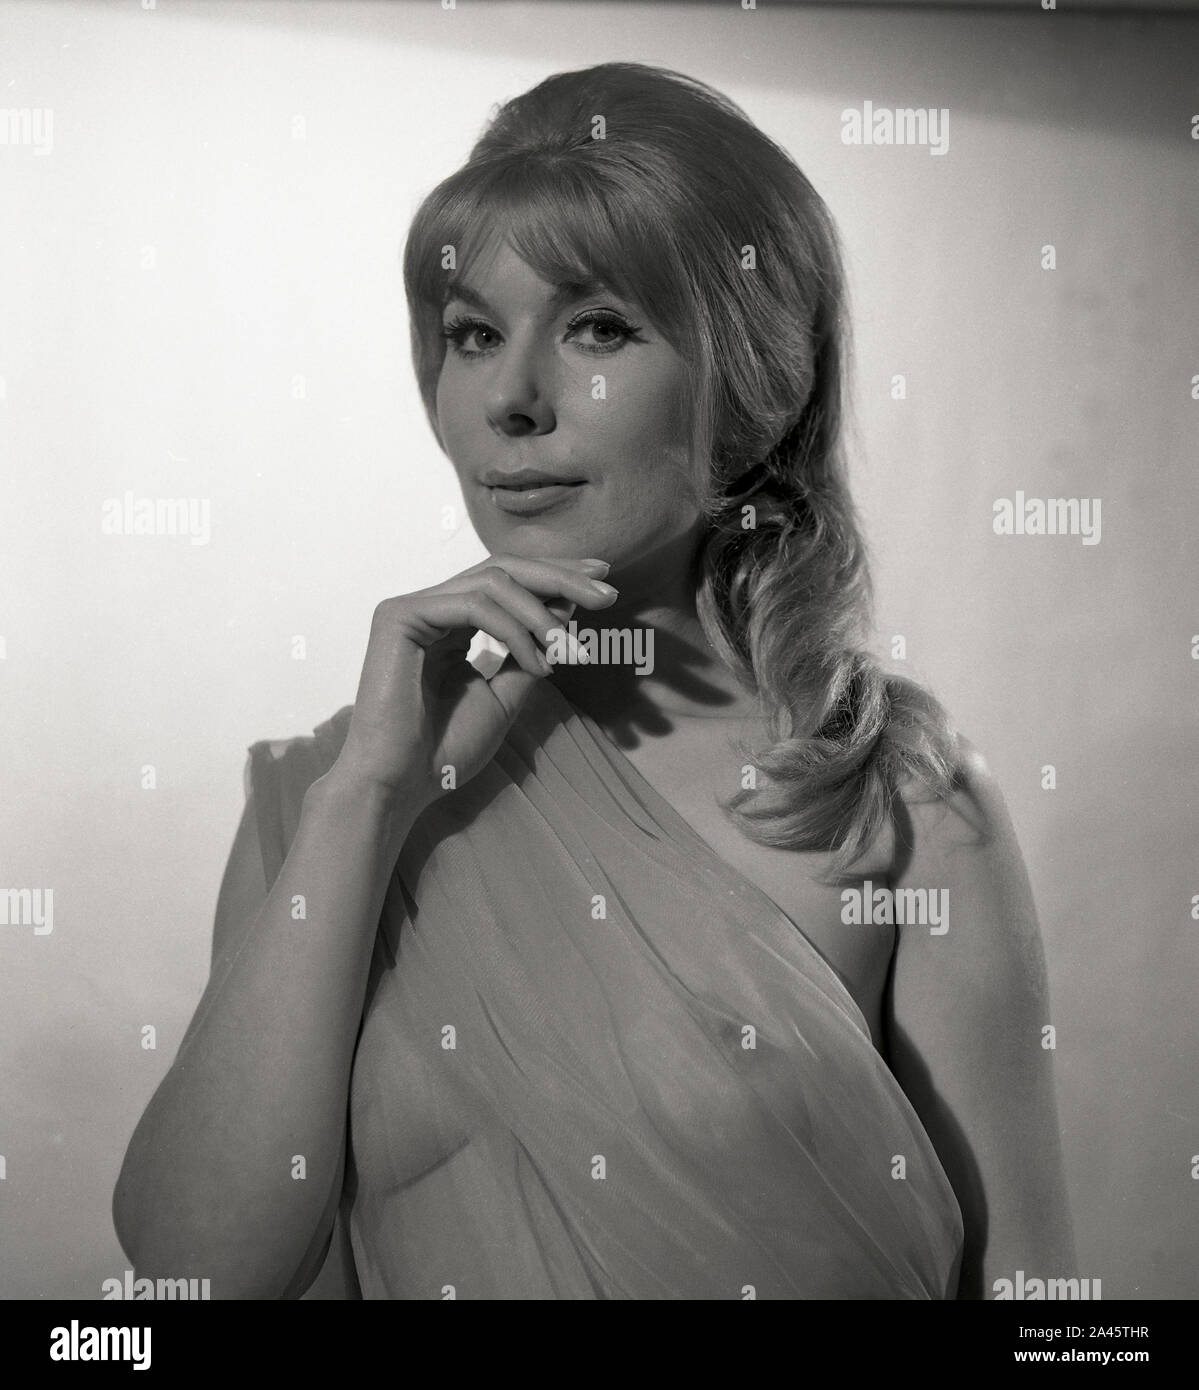 1960 Fotoshooting weibliche Modell klassisch gekleidet wie eine Römische oder griechische Göttin, c 1969 Foto von Tony Henshaw Archiv Stockfoto